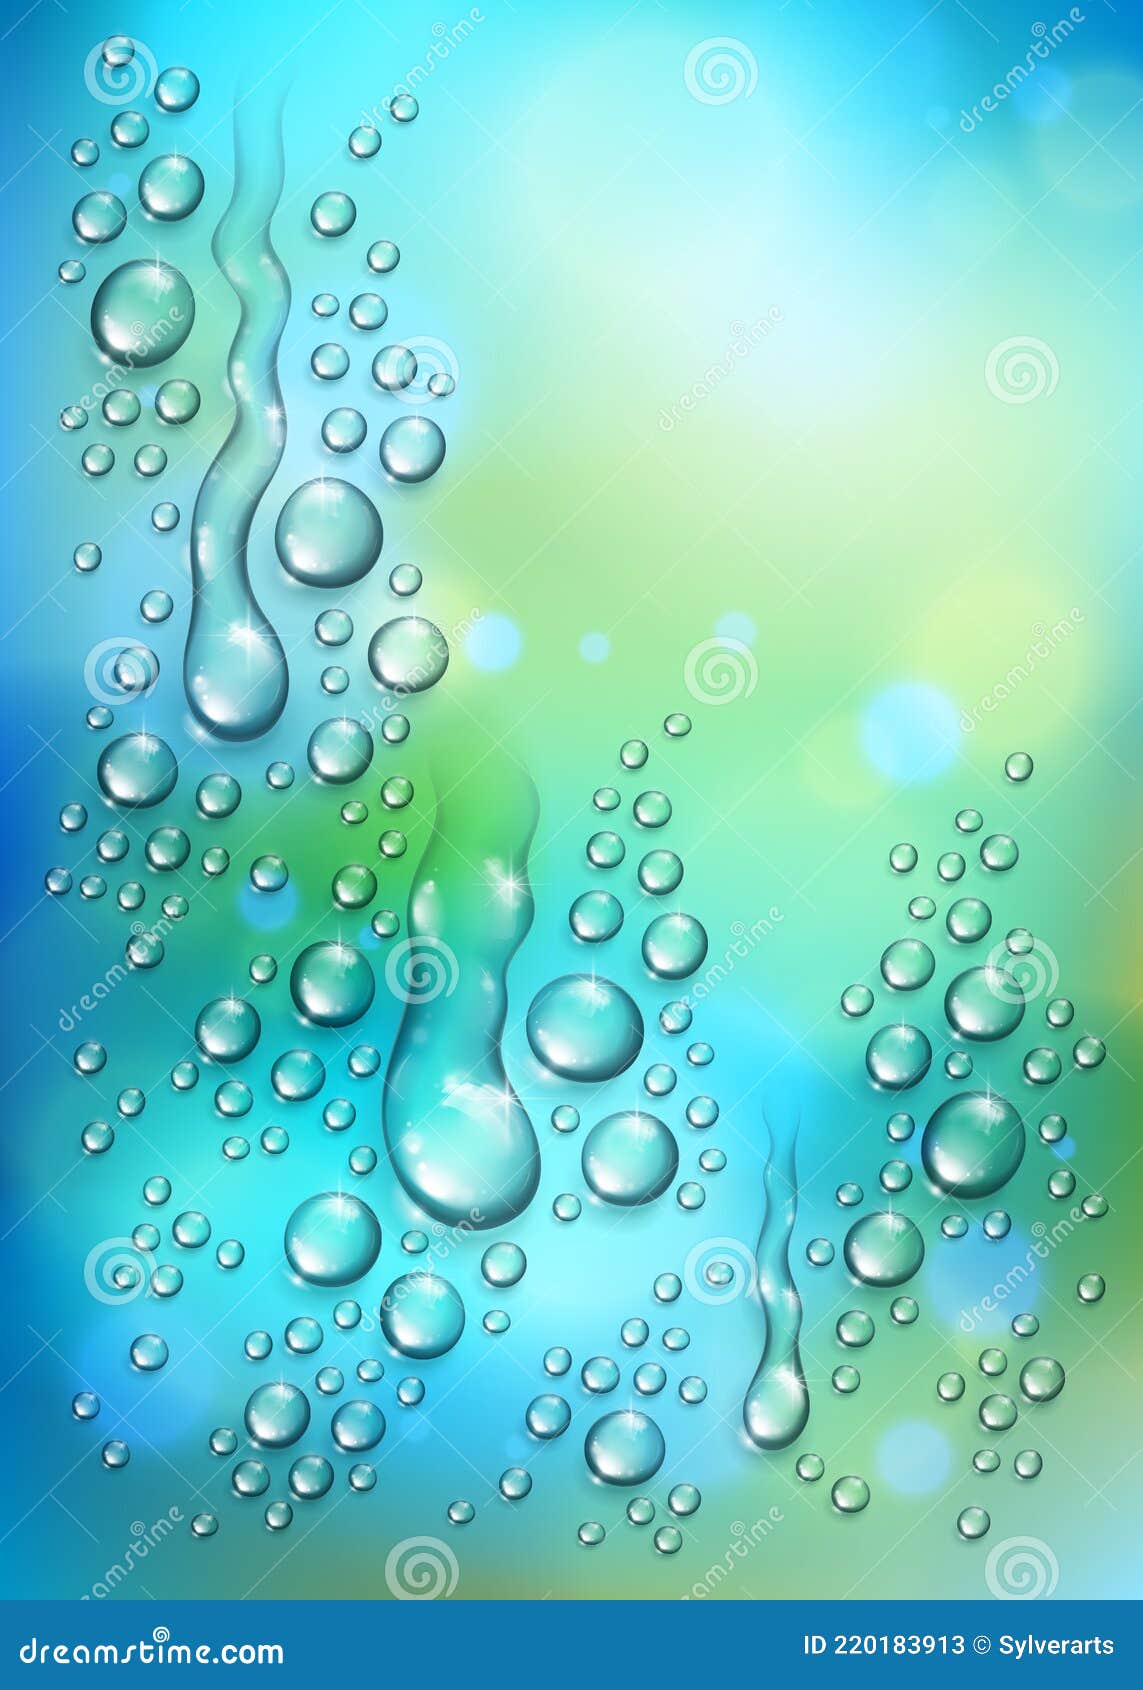 Giọt nước mưa trên thiên nhiên xanh mờ 3D sẽ đưa bạn vào một không gian khác để giải trí và thư giãn. Với hình ảnh trực quan, bạn sẽ ngỡ như đang ở giữa thiên nhiên trong giọt nước mưa. Hãy cảm nhận và đắm chìm trong vẻ đẹp của thiên nhiên với hình ảnh tuyệt vời này.